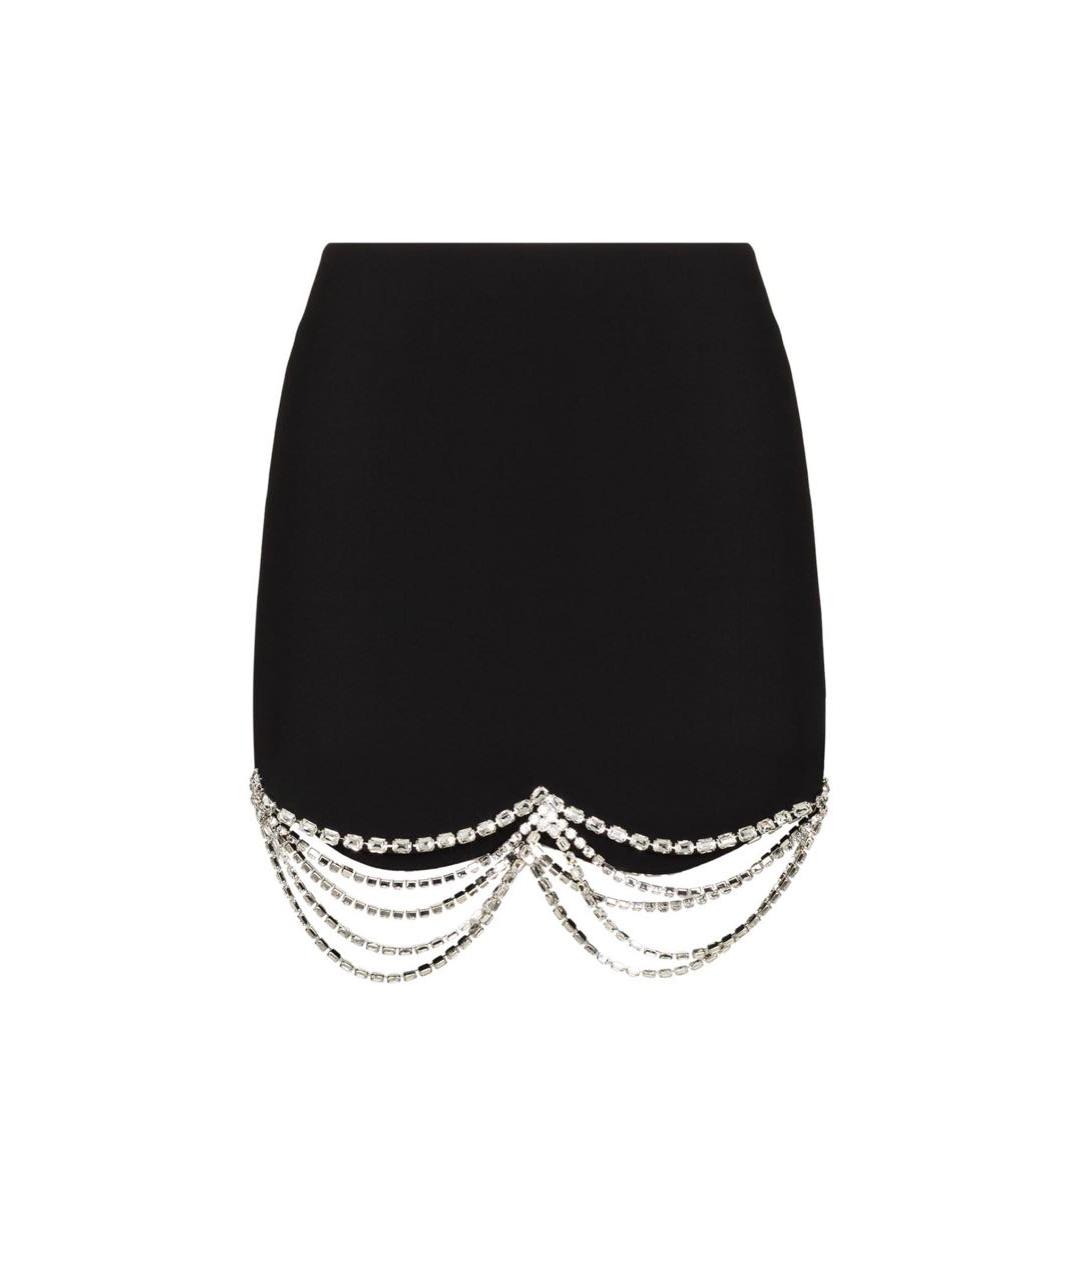 AREA Черная полиэстеровая юбка миди, фото 1